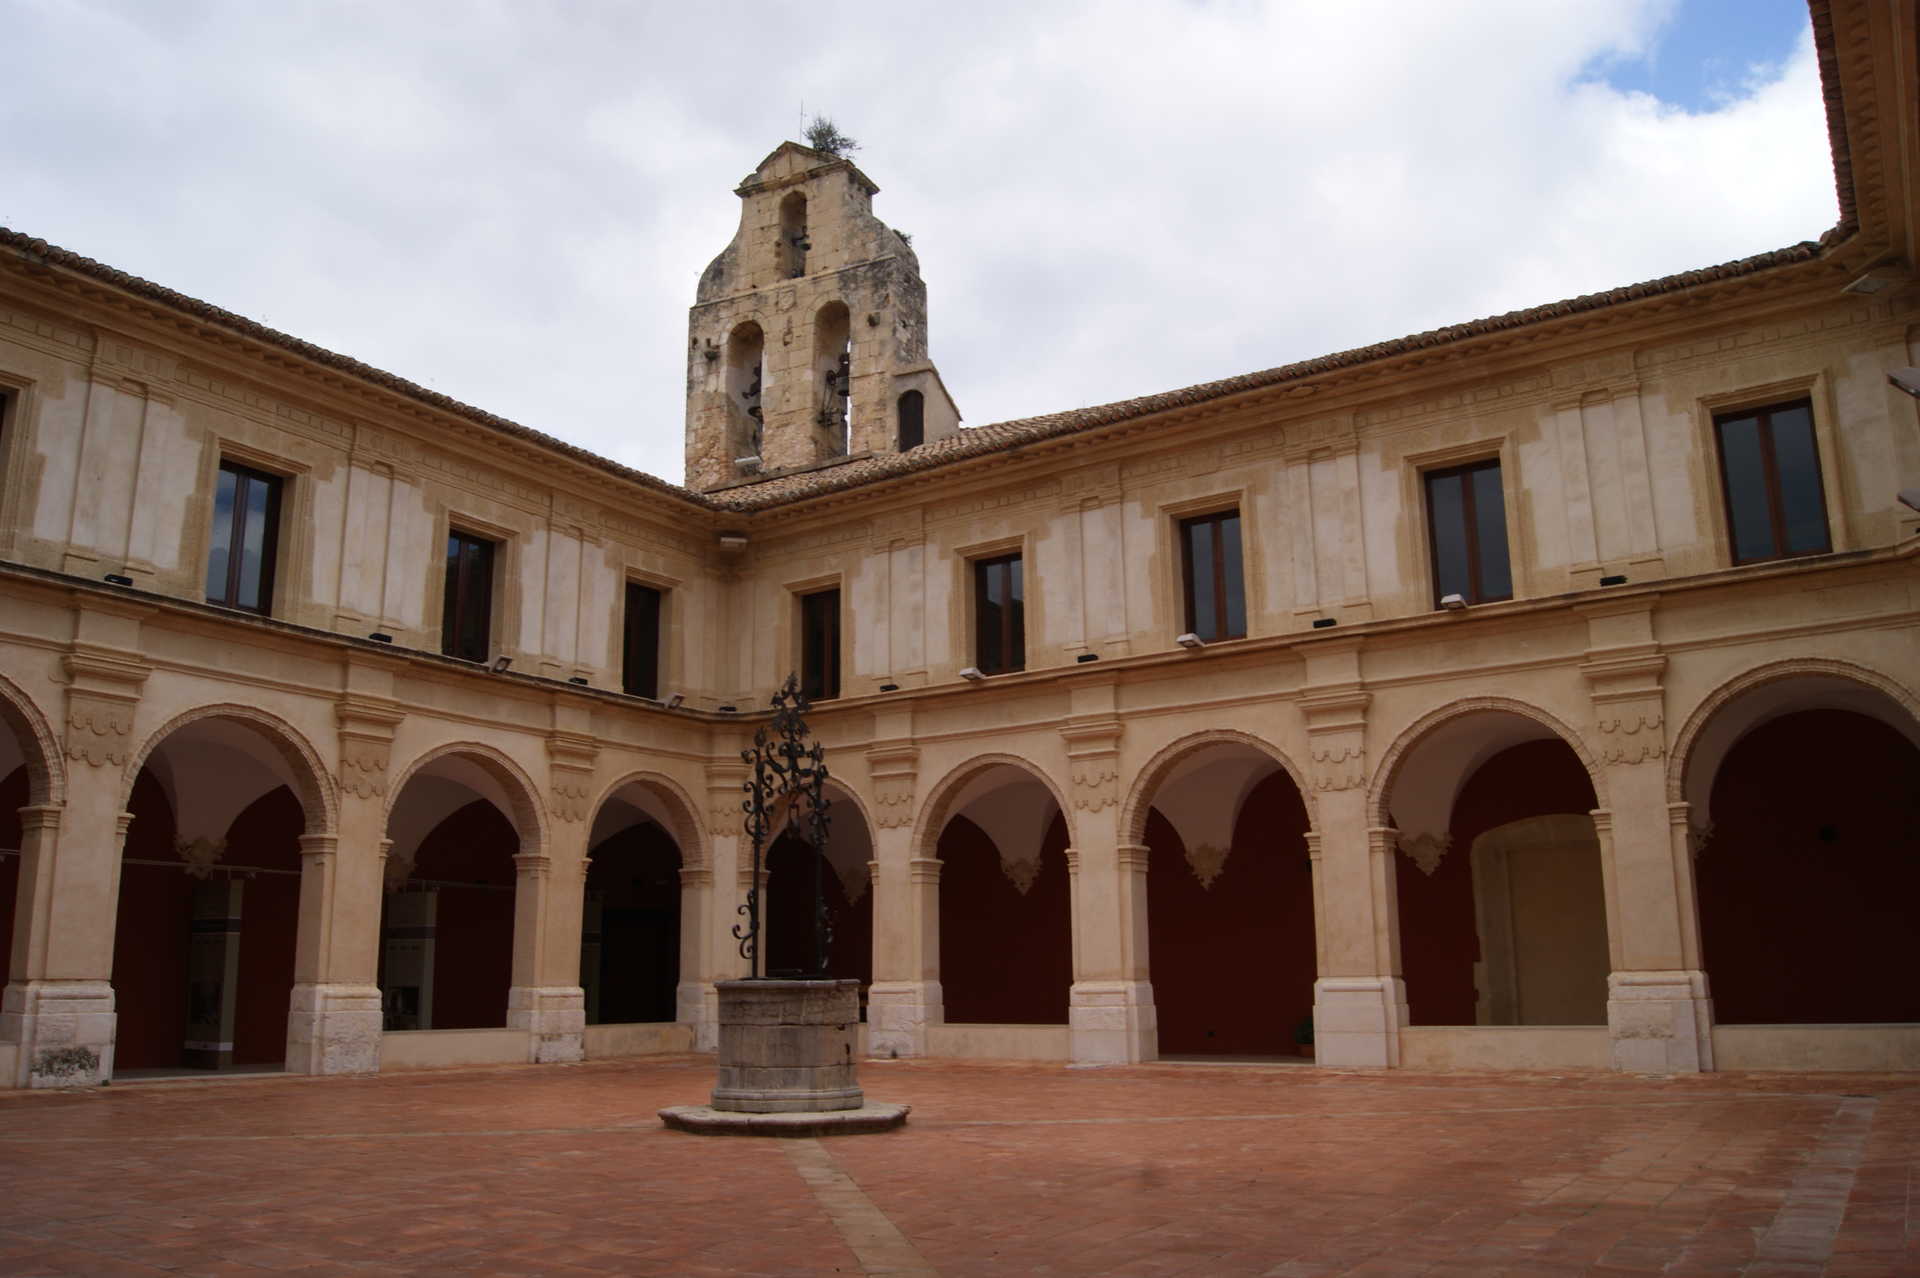 Monastery of Corpus Christi